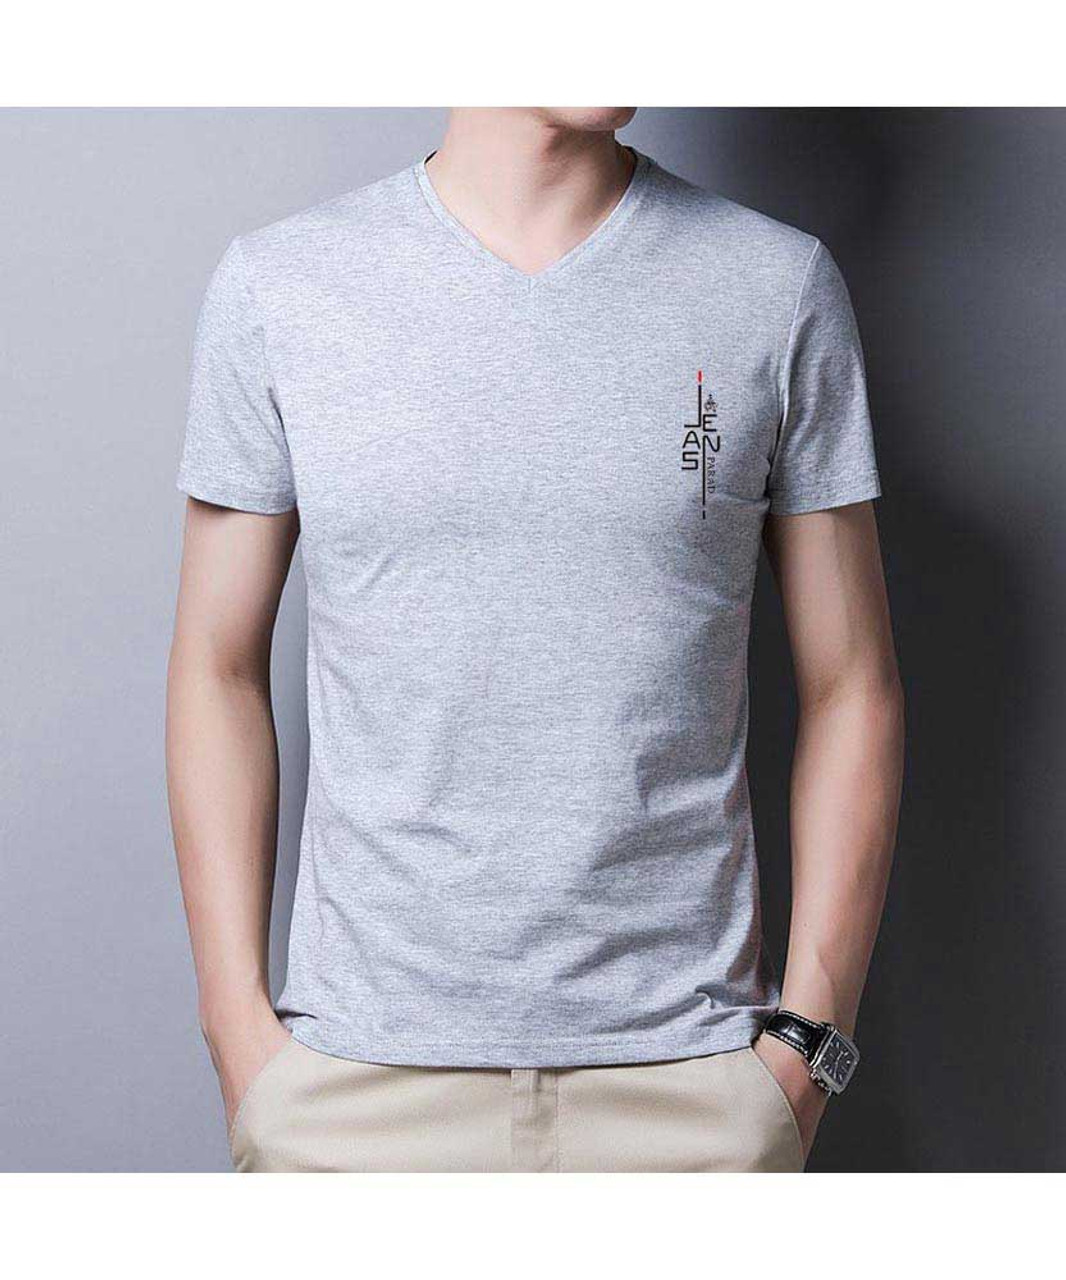 Søjle disharmoni tromme Grey pattern letter print V neck short sleeve t-shirt | Mens t-shirts online  1537MCLO